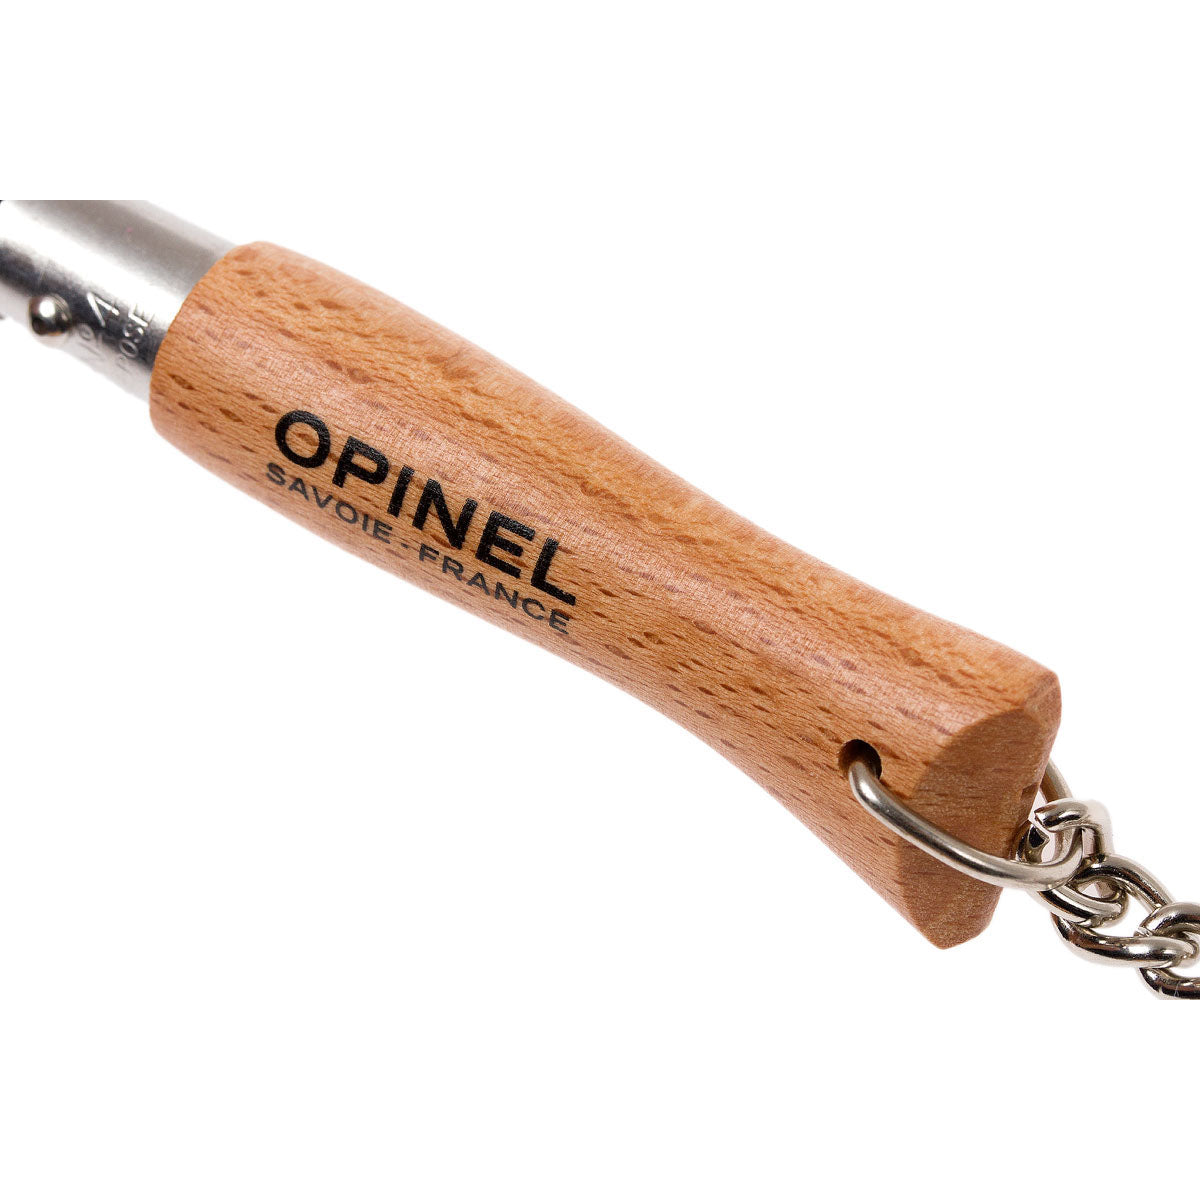 Opinel key ring pocket knife N°04